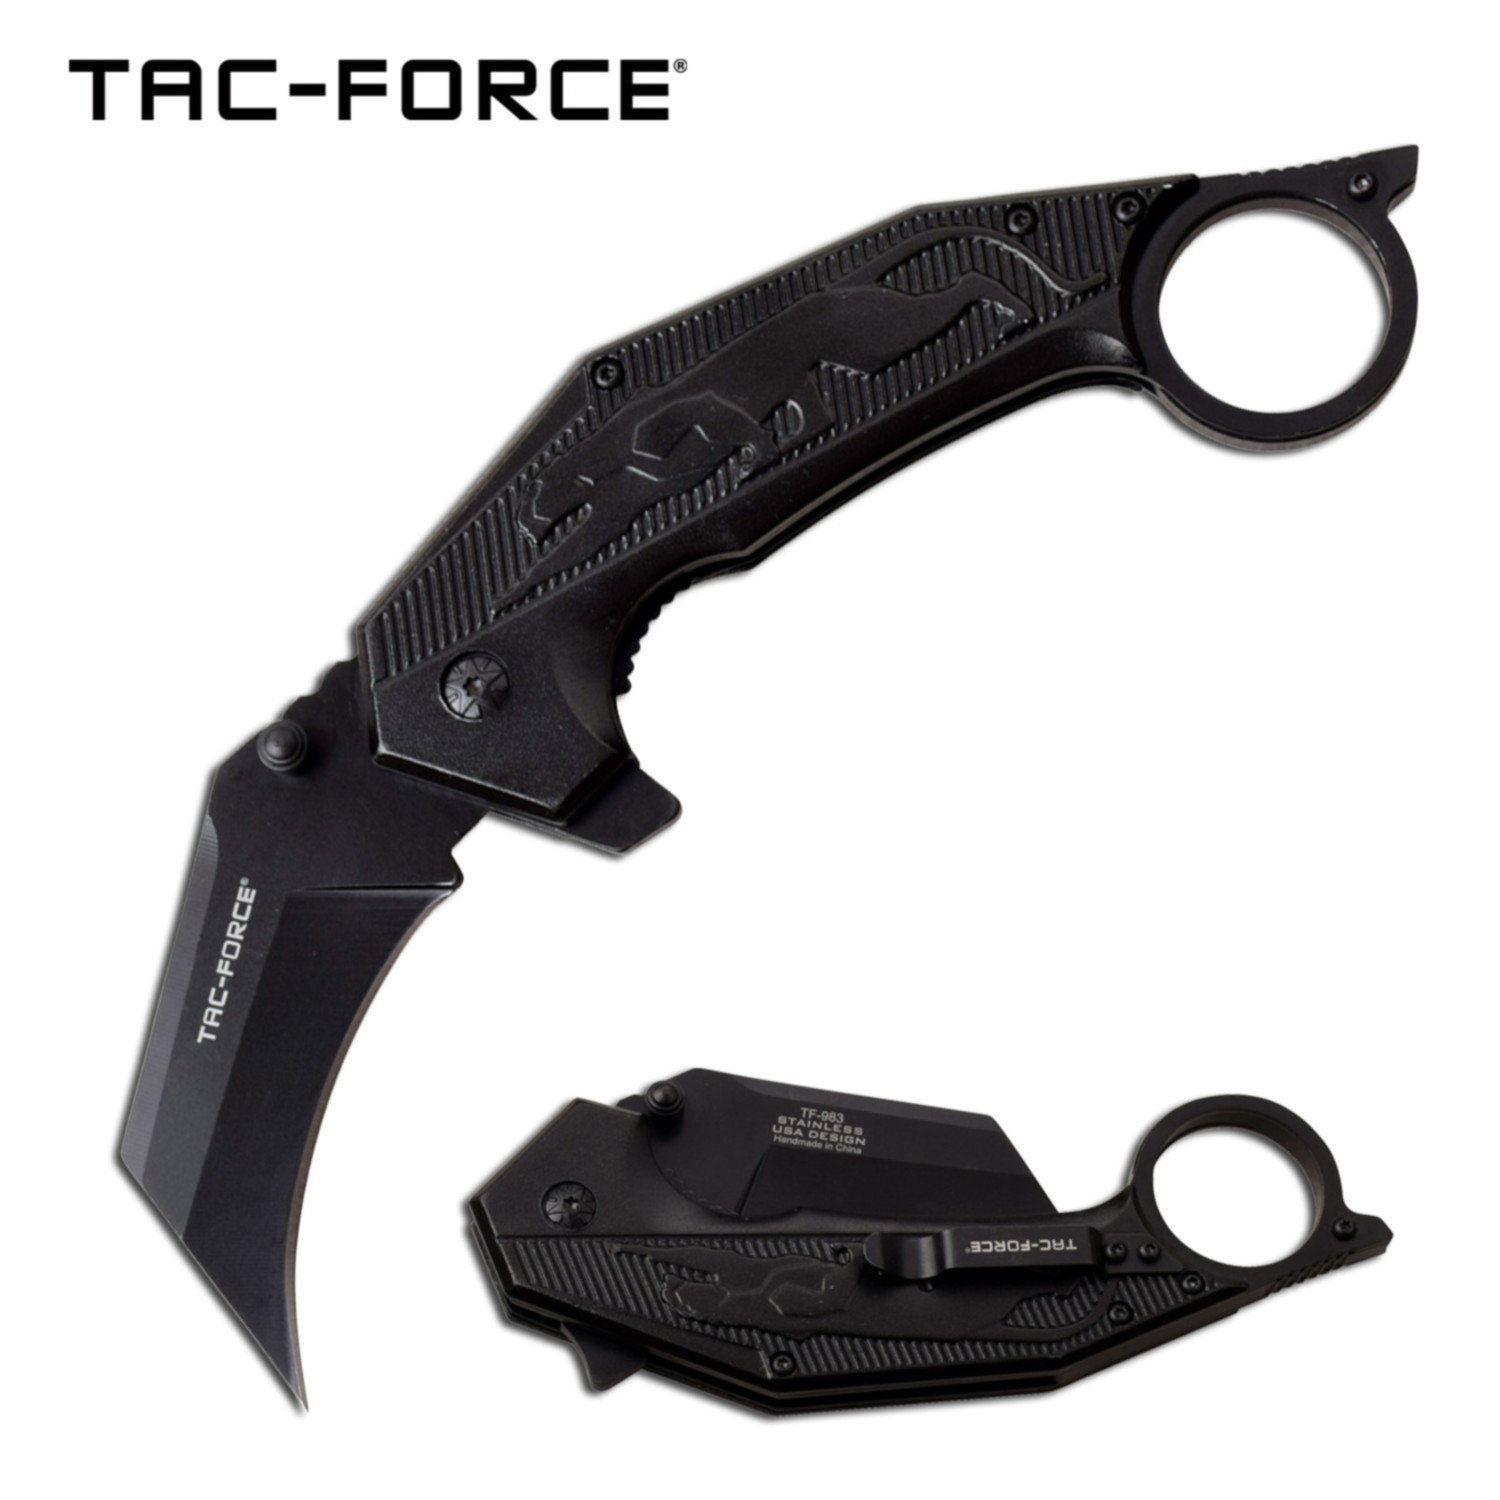 Spring-Assist Folding Knife Tac-Force 2.75